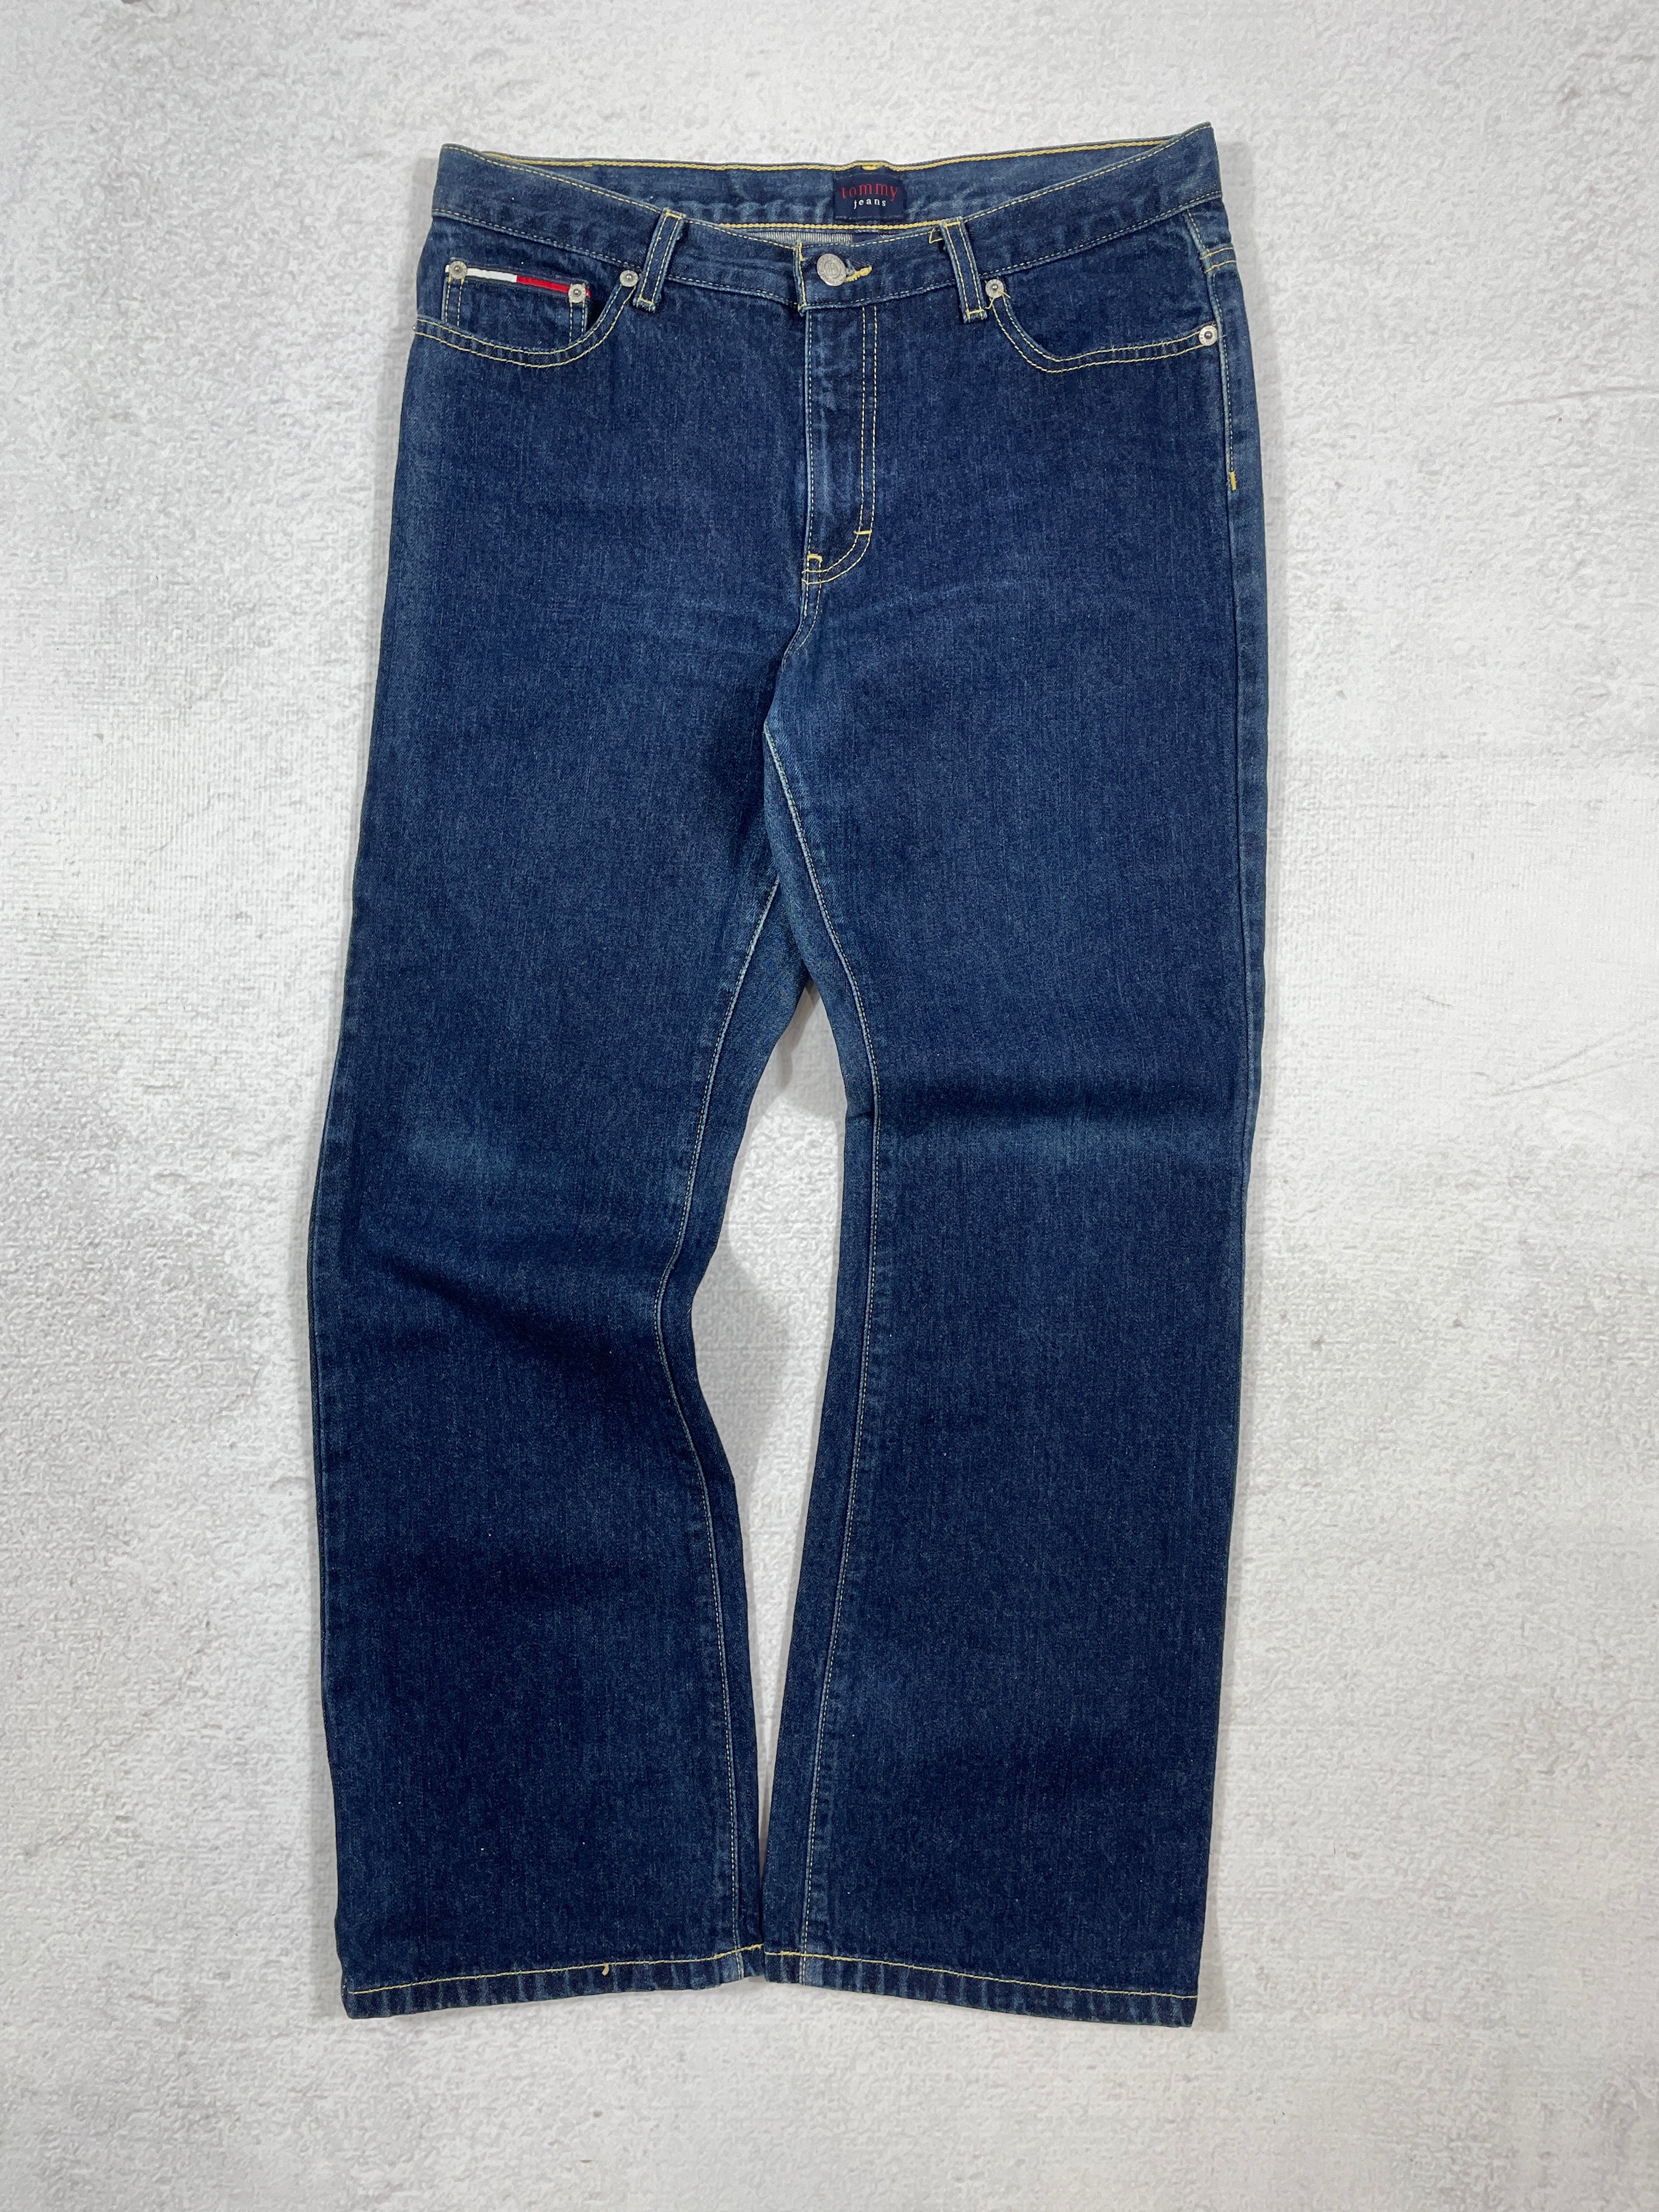 Vintage Tommy Hilfiger Jeans - Women's 28Wx30L